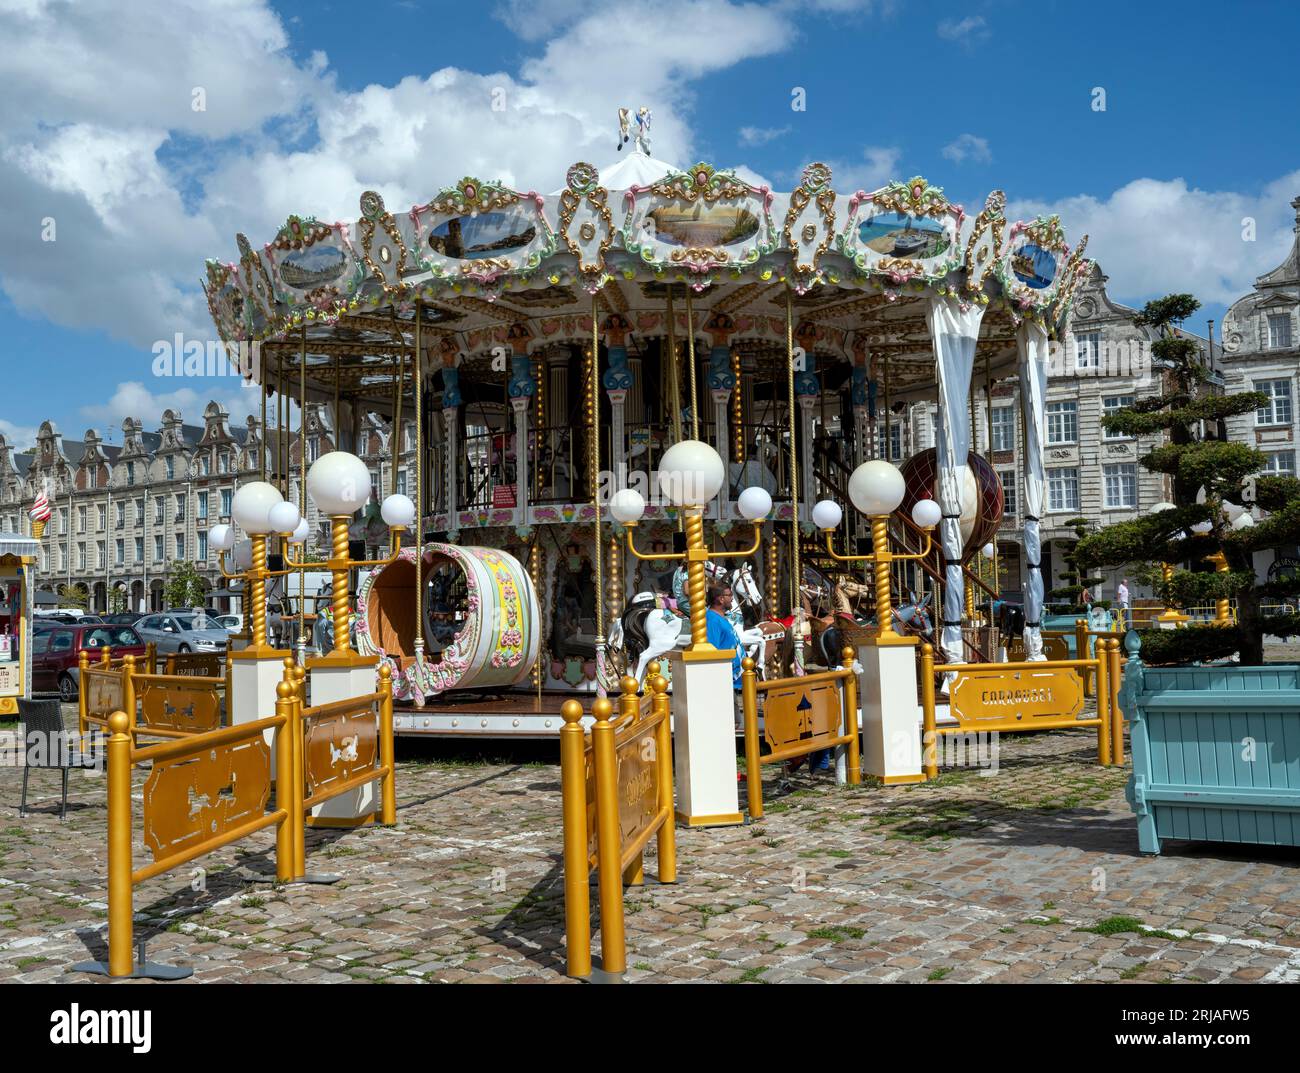 Un carrousel de foire à la place des Héros, dans le centre d'Arras, Nord de la France, France, UE. Banque D'Images